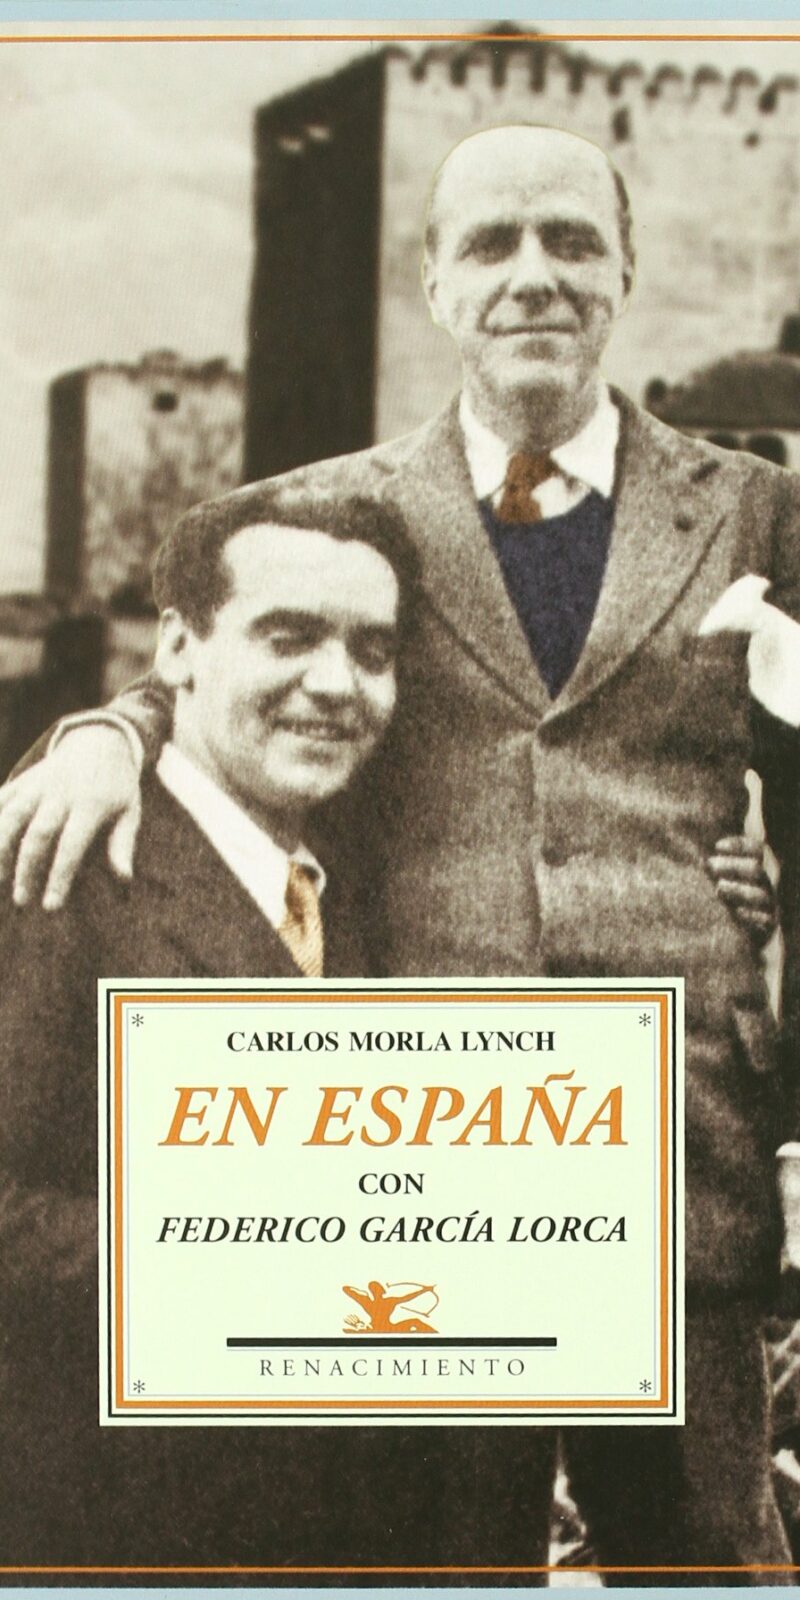 Los diarios de Carlos Morla Lynch (Santiago de Chile, 1885 - Madrid, 1969) son quizá la mejor fuente documental para conocer la vida intelectual española